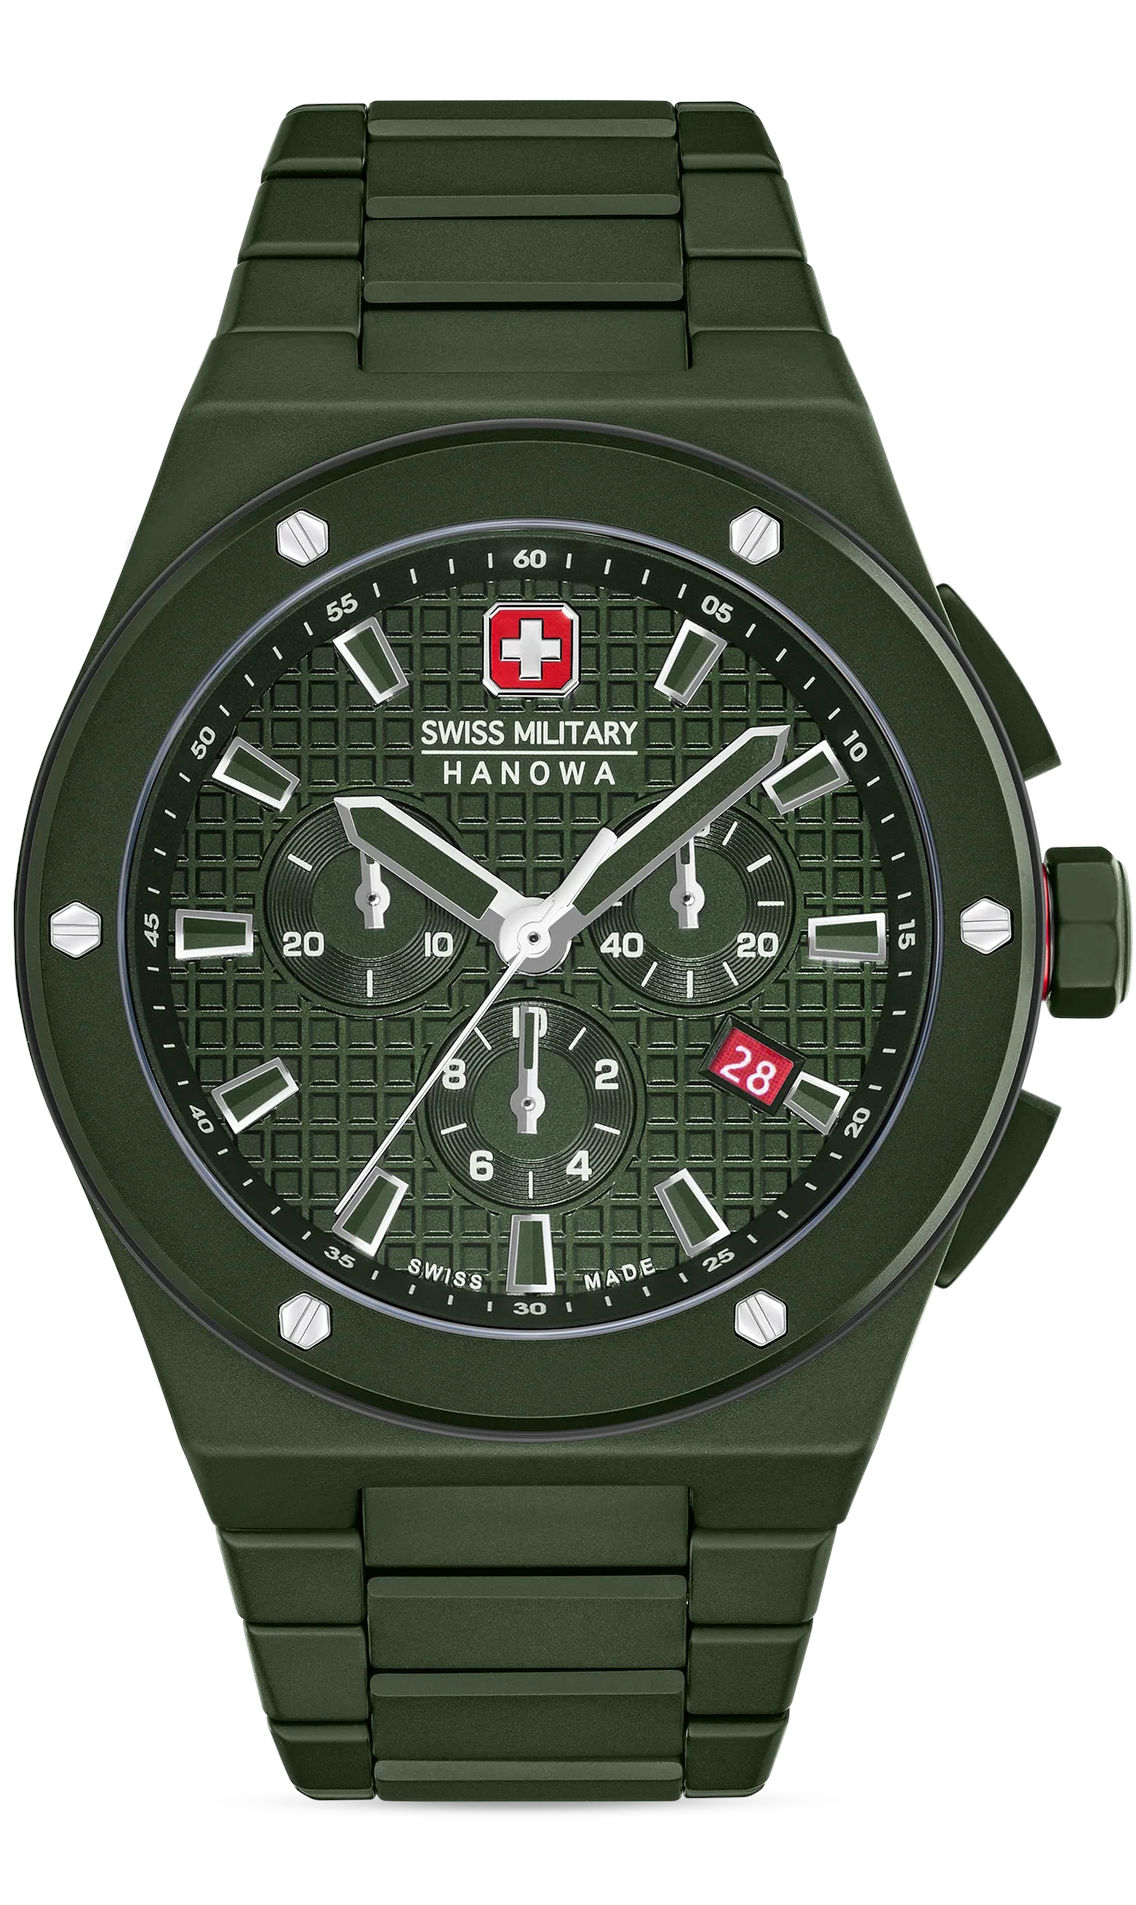  Swiss Military Hanowa SMWGI0002282